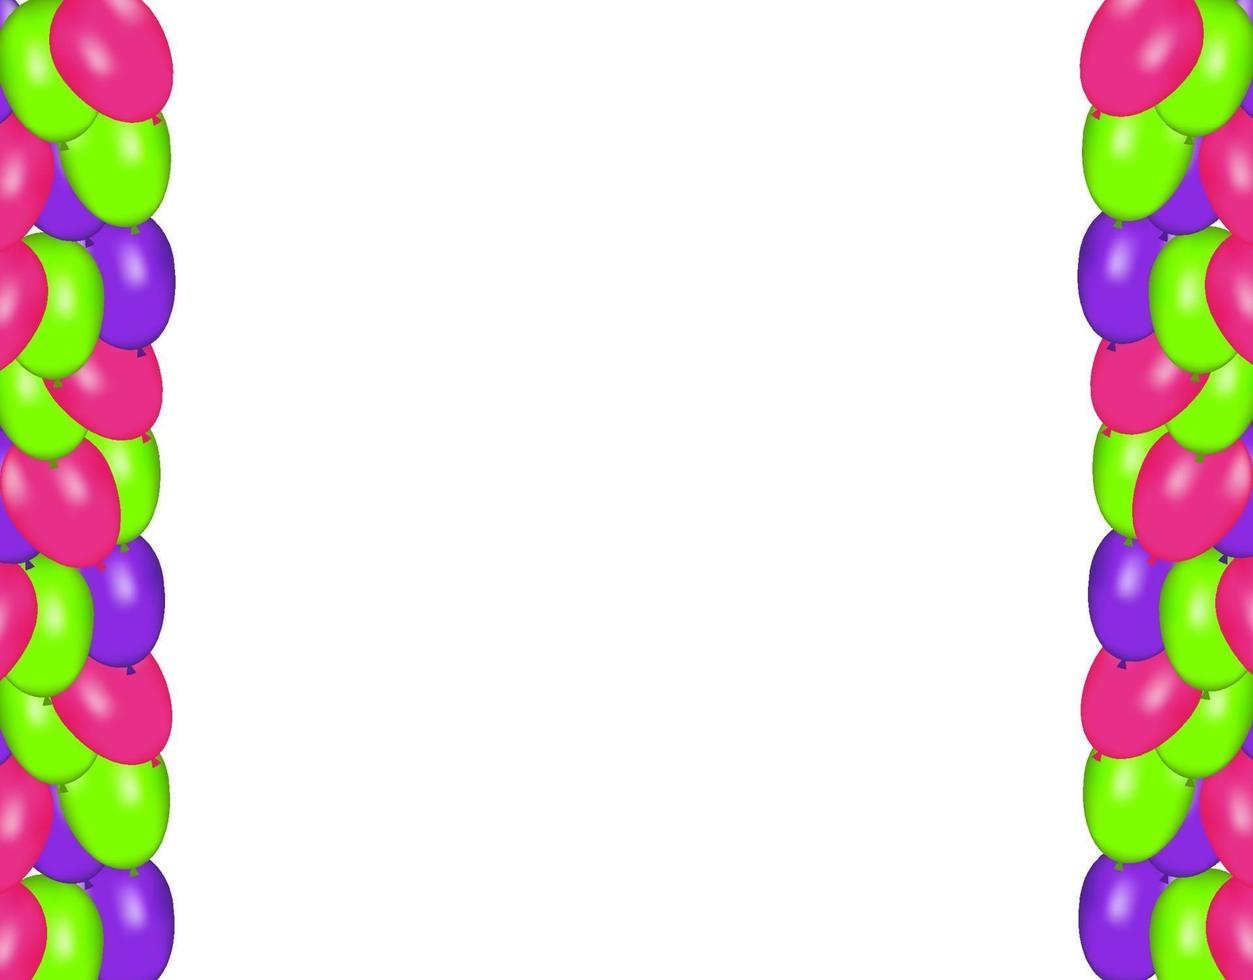 kleurensamenstelling van vector realistische ballonnen geïsoleerd op een witte achtergrond. ballonnen geïsoleerd. voor verjaardagswenskaarten of andere ontwerpen